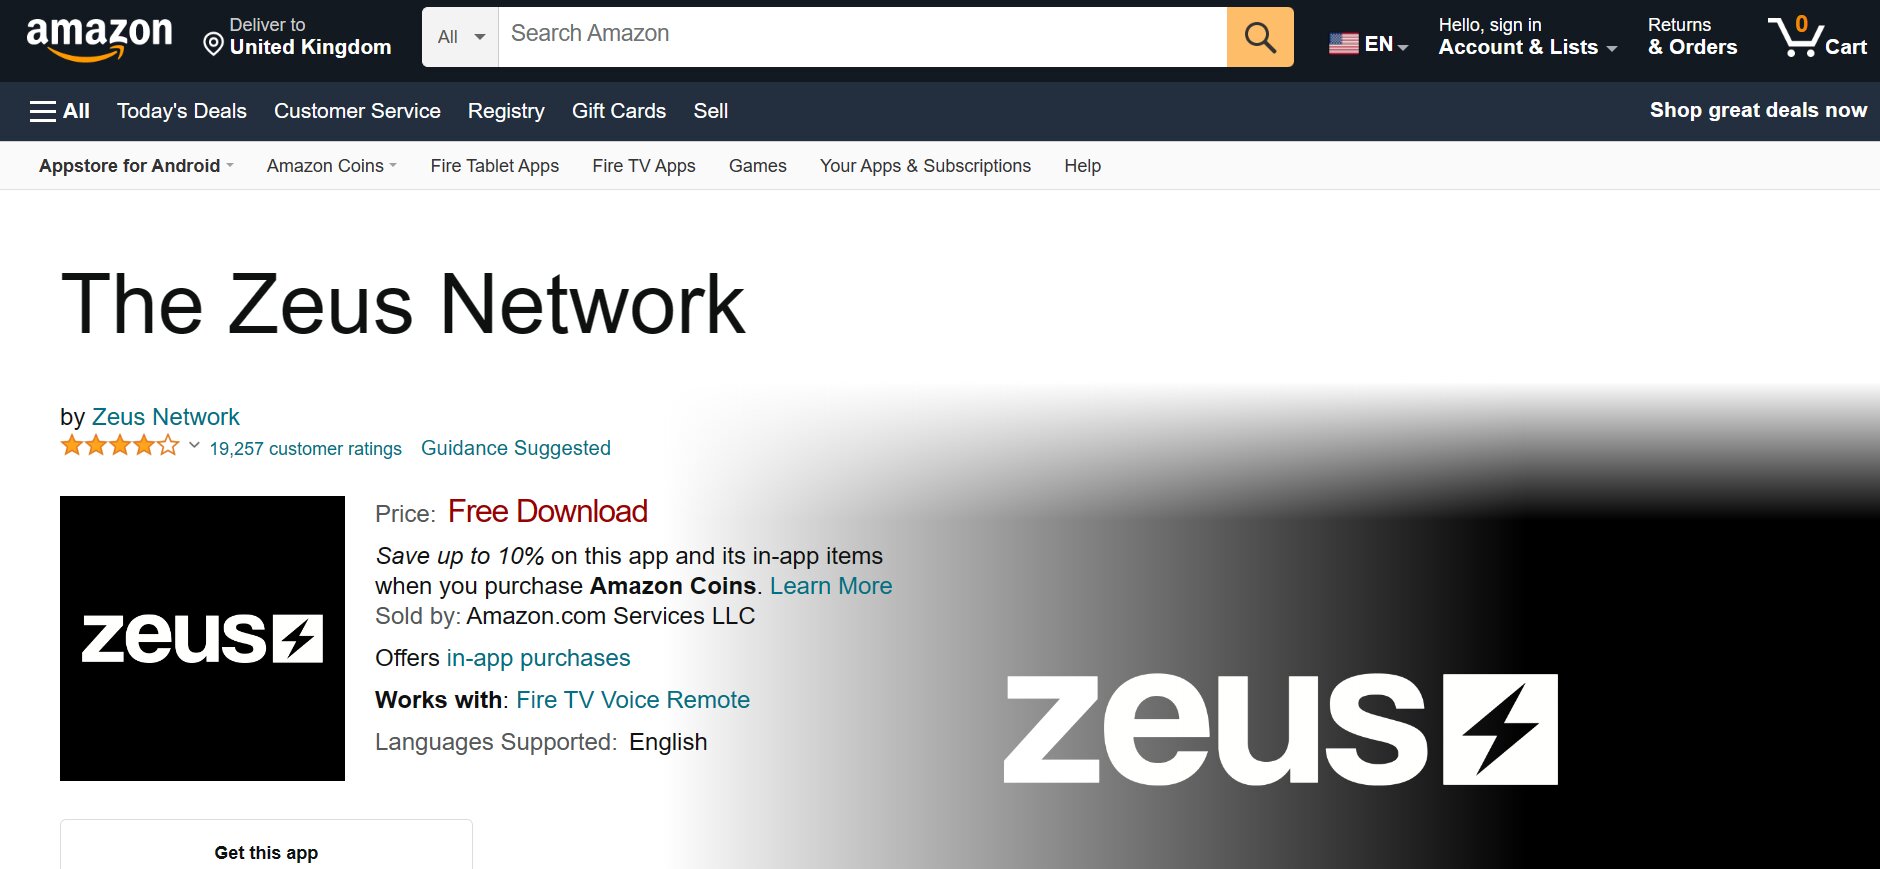 Zeus Network App Amazon Firestick